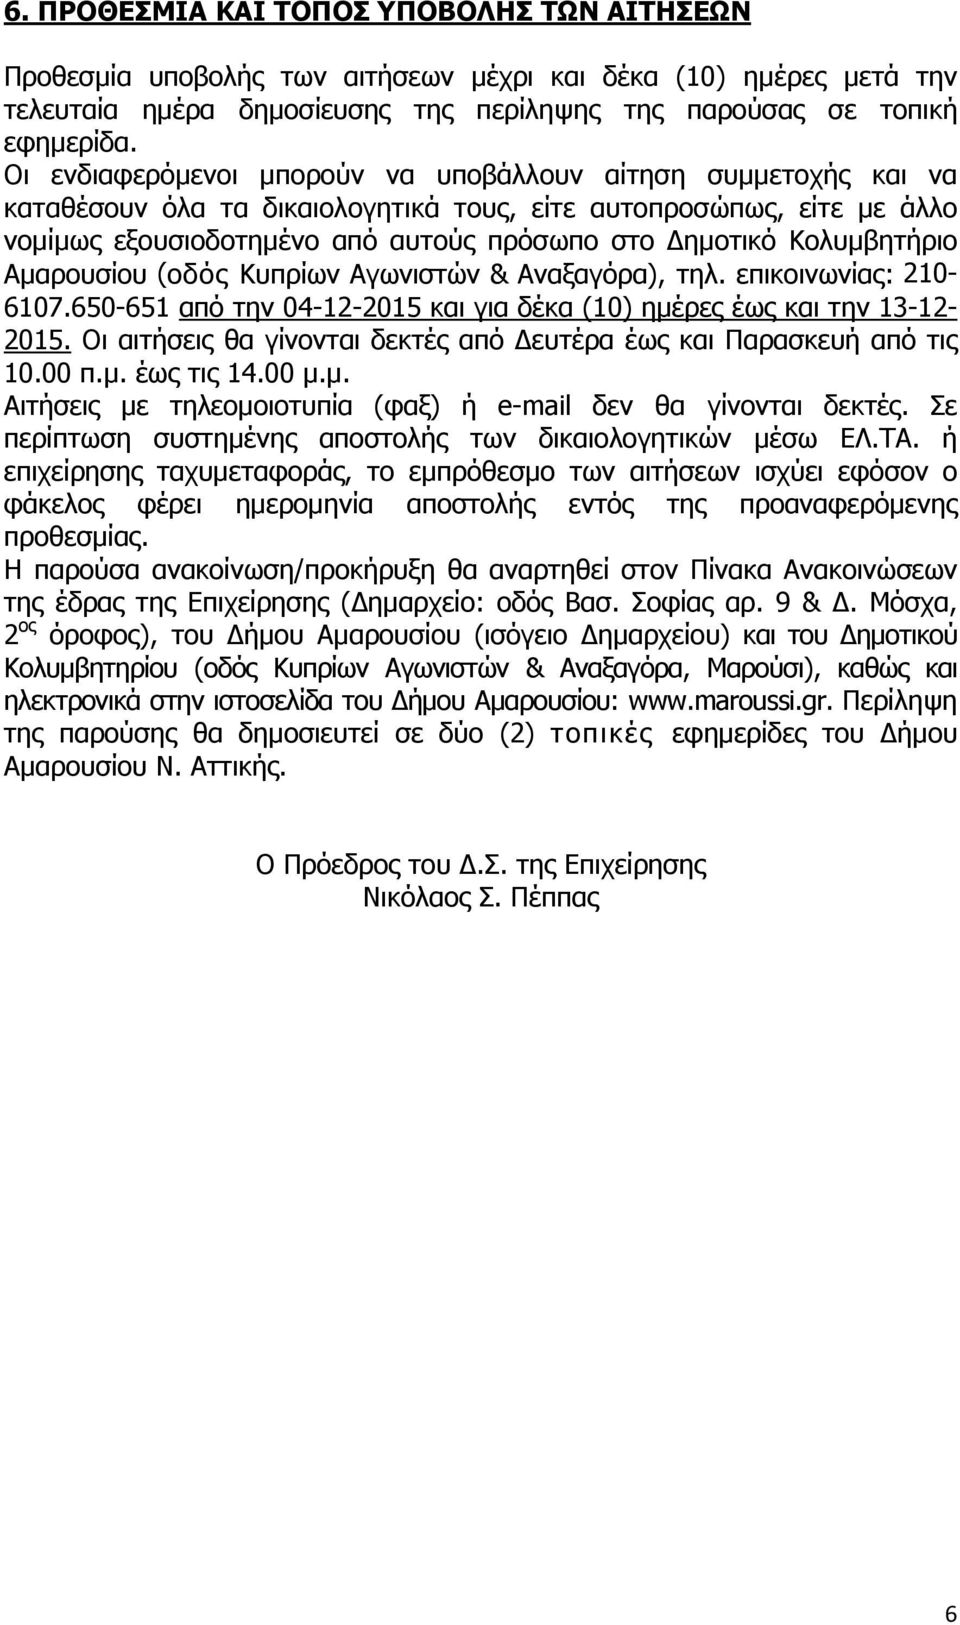 Κολυμβητήριο Αμαρουσίου (οδός Κυπρίων Αγωνιστών & Αναξαγόρα), τηλ. επικοινωνίας: 210-6107.650-651 από την 04-12-2015 και για δέκα (10) ημέρες έως και την 13-12- 2015.